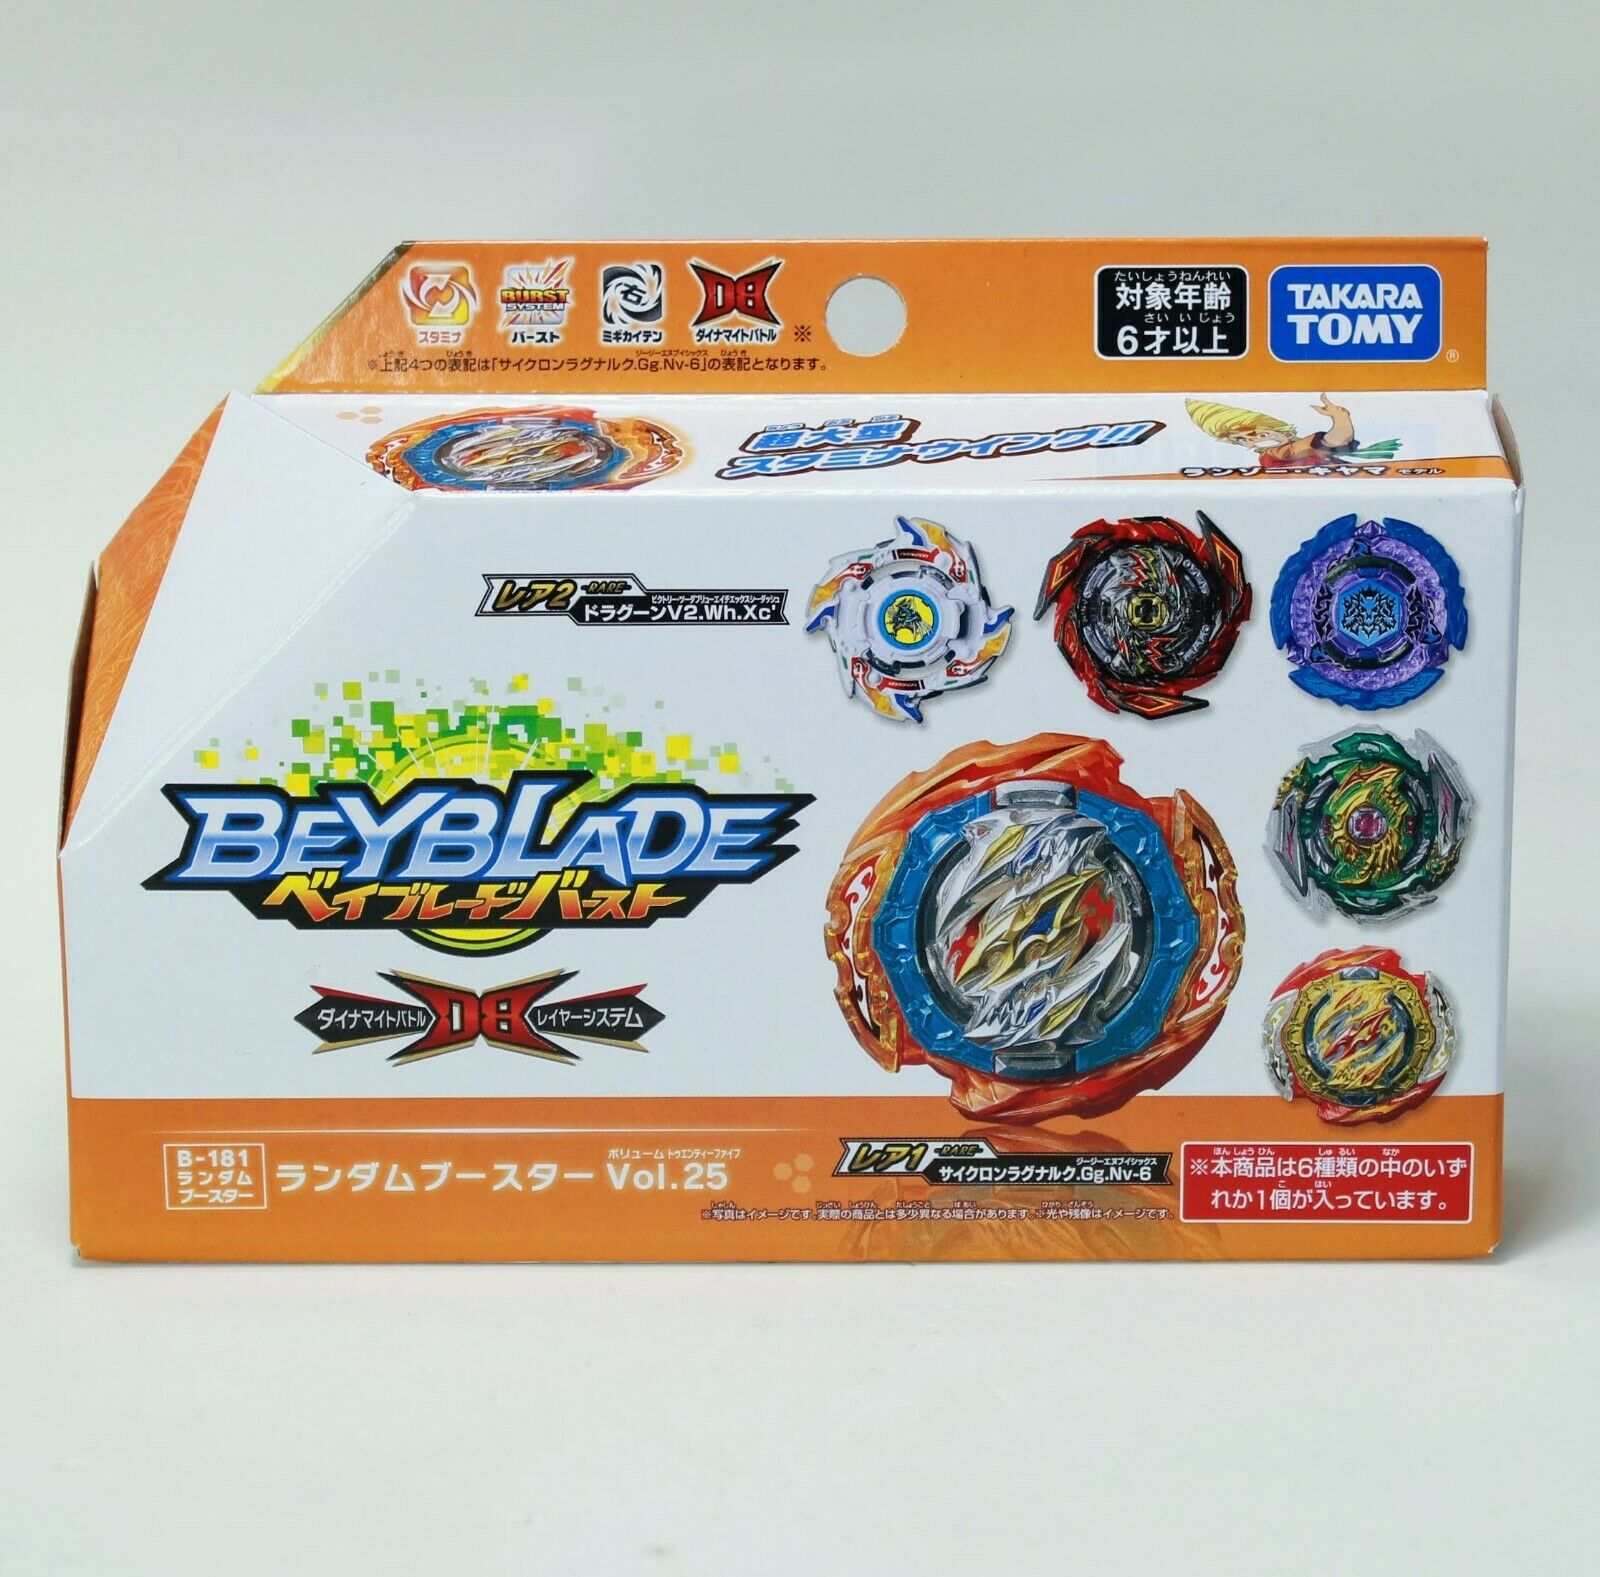 Beyblade Burst - Dynamite Random Booster Vol. 25 B-181